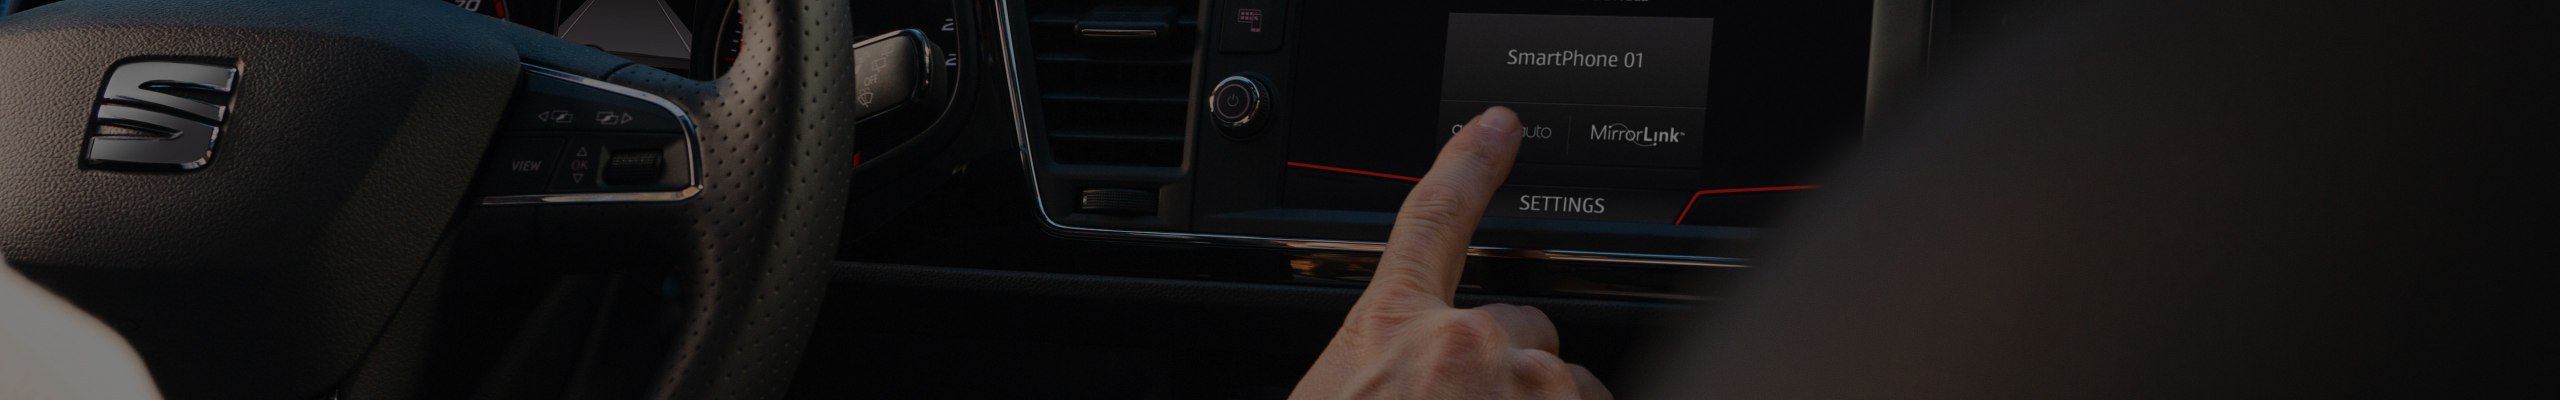 Kaartupdates SEAT navigatiesysteem – generisch kaartoverzicht dashboard met oranje rand